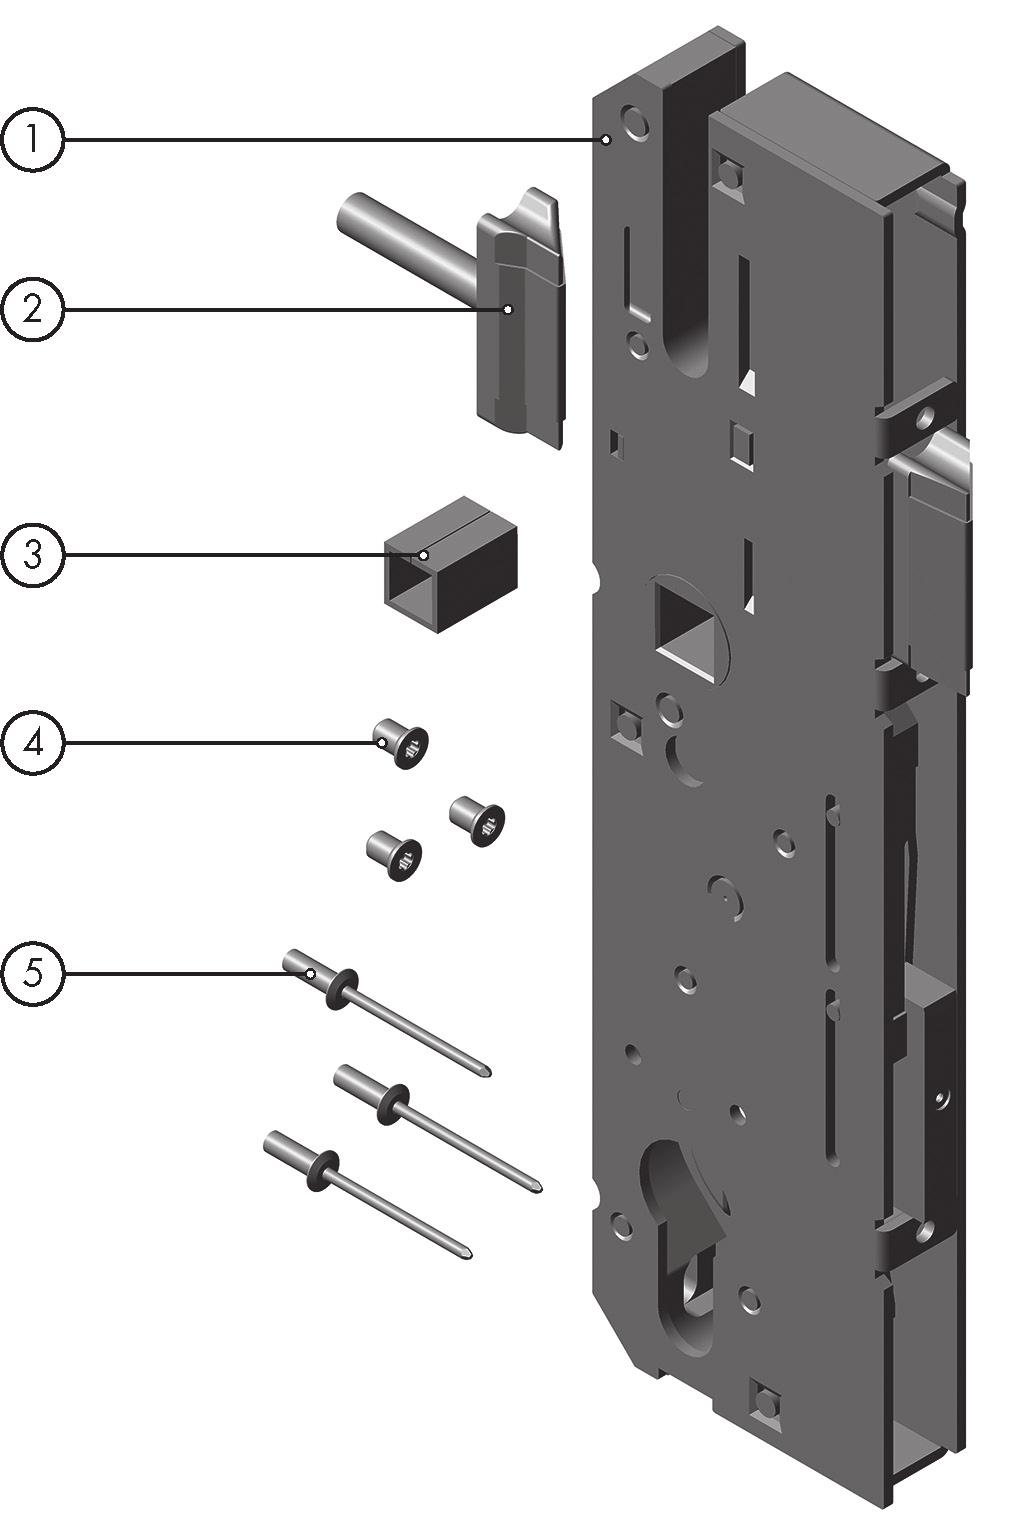 Contenuto della fornitura 3.2 Serratura centrale (da ordinare separatamente) La serratura centrale adatta al kit frontale scelto va ordinata separatamente.